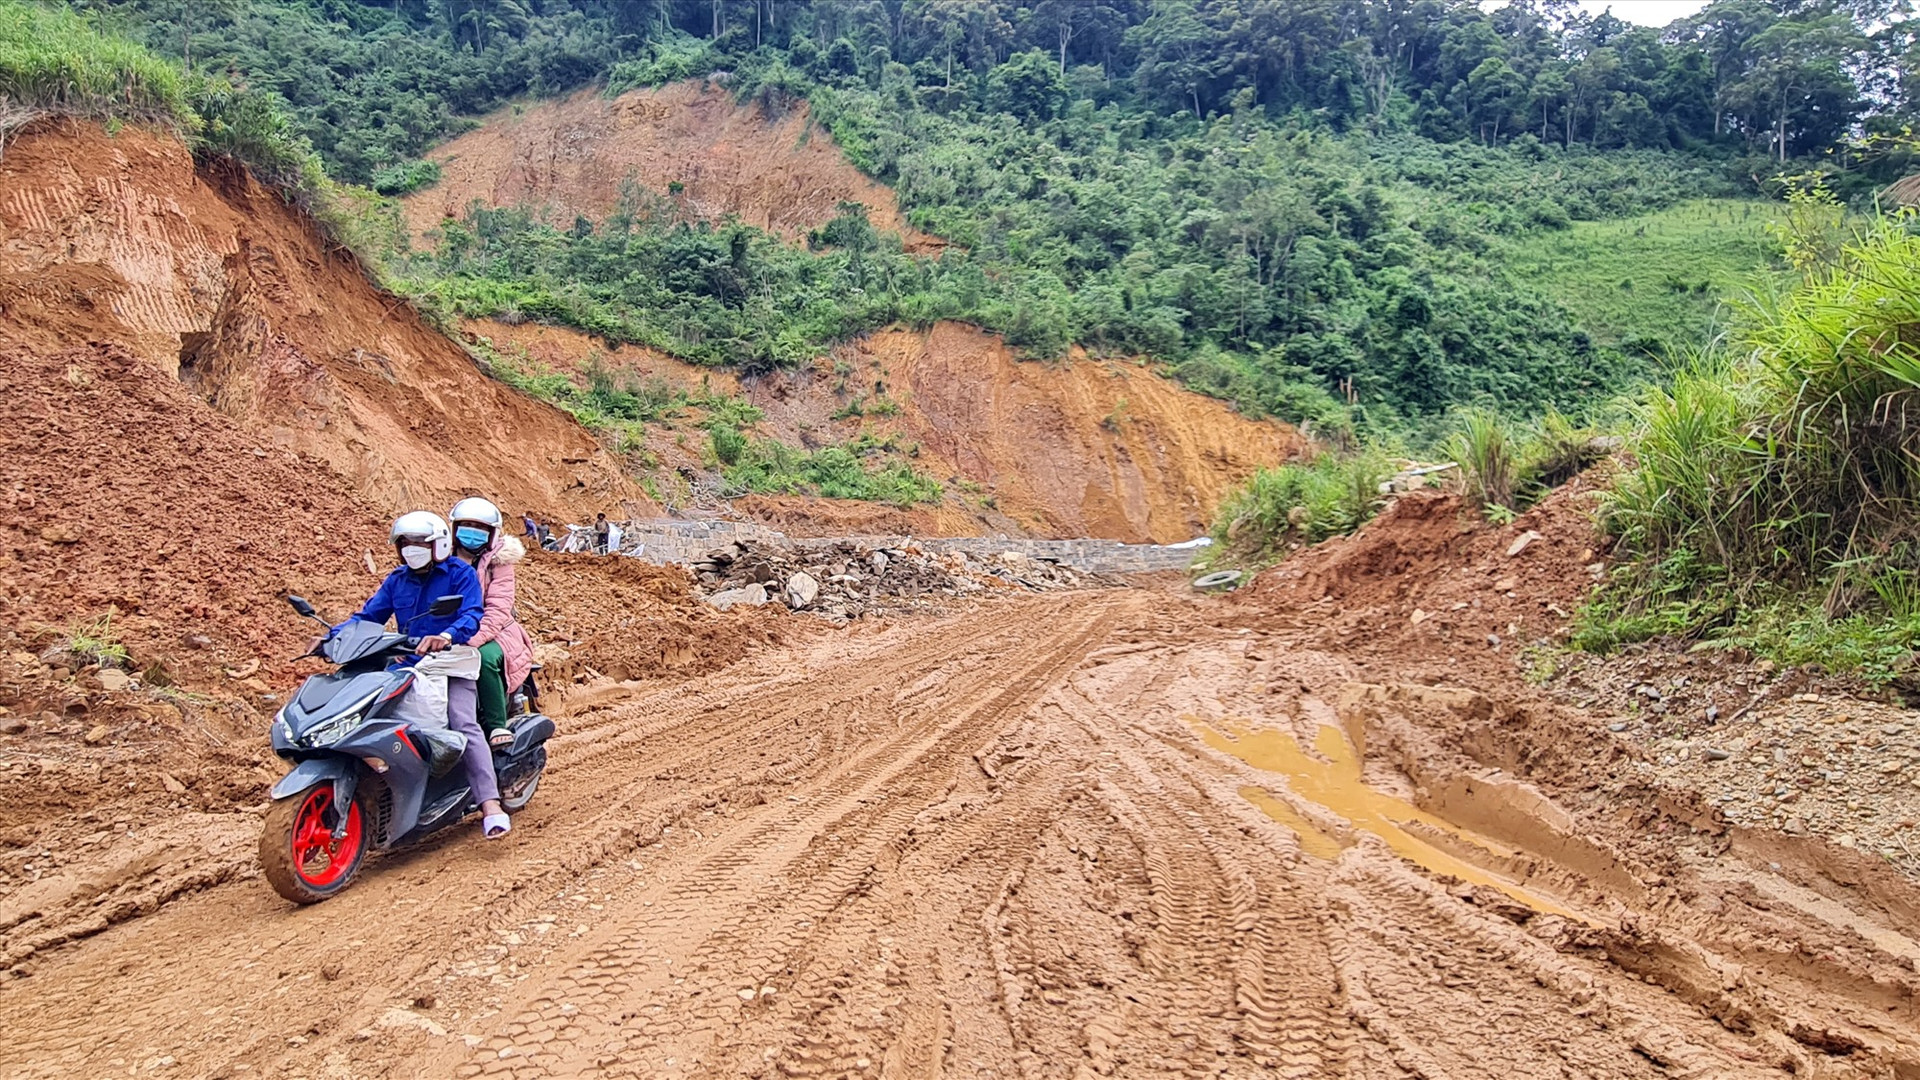 Việc thi công các công trình dân sinh cũng là một trong những nguyên nhân gây sạt lở đồi núi ở các xã vùng cao Tây Giang. Ảnh: HOÀNG LIÊN